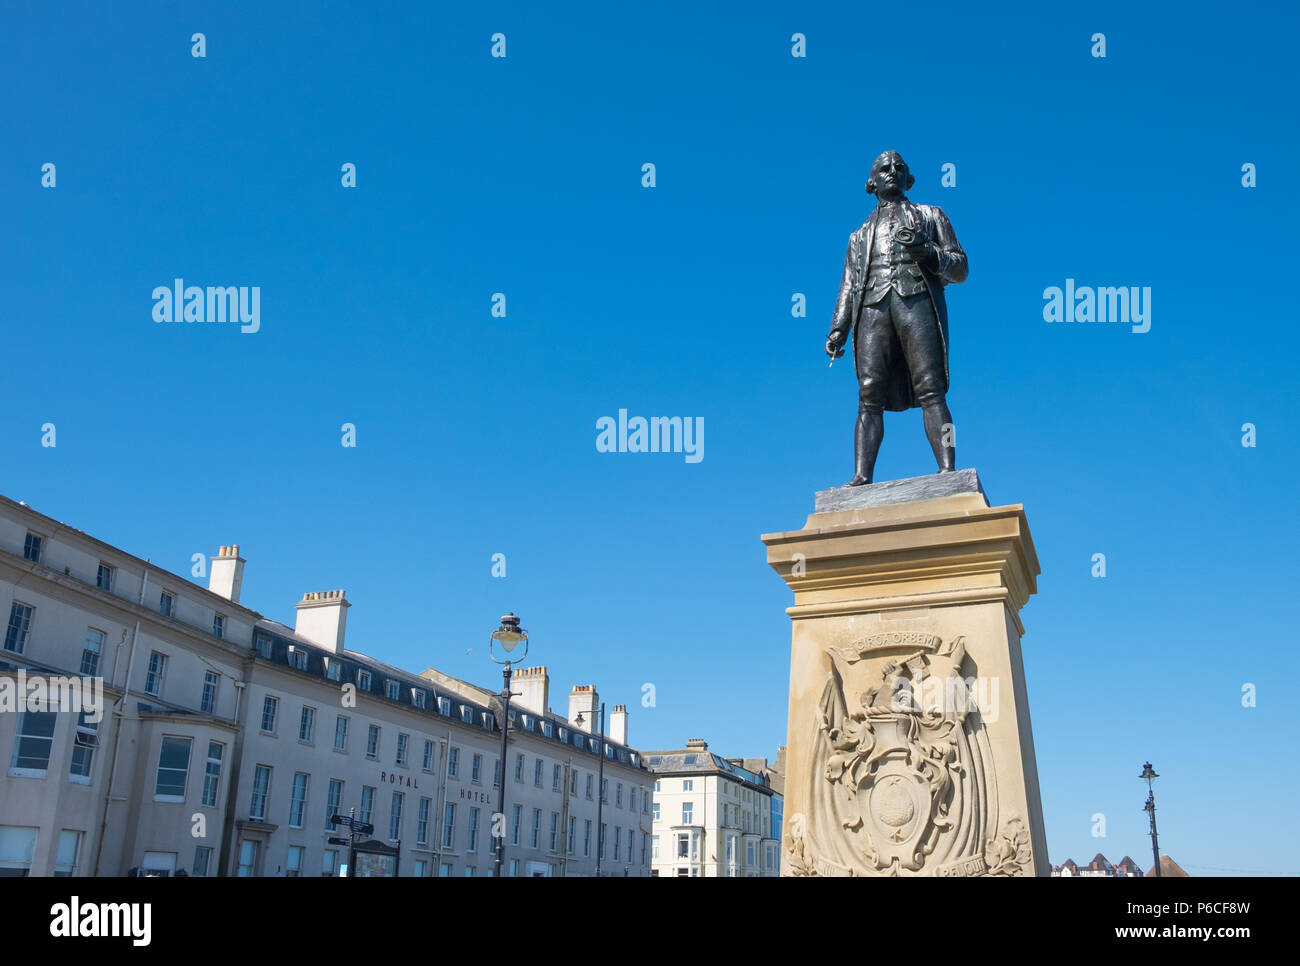 Kapitän James Cook Statue in Whitby, North Yorkshire. Cook begann seine Entdeckungsreisen in Whitby Hafen in der Nähe seiner Heimatstadt. Stockfoto